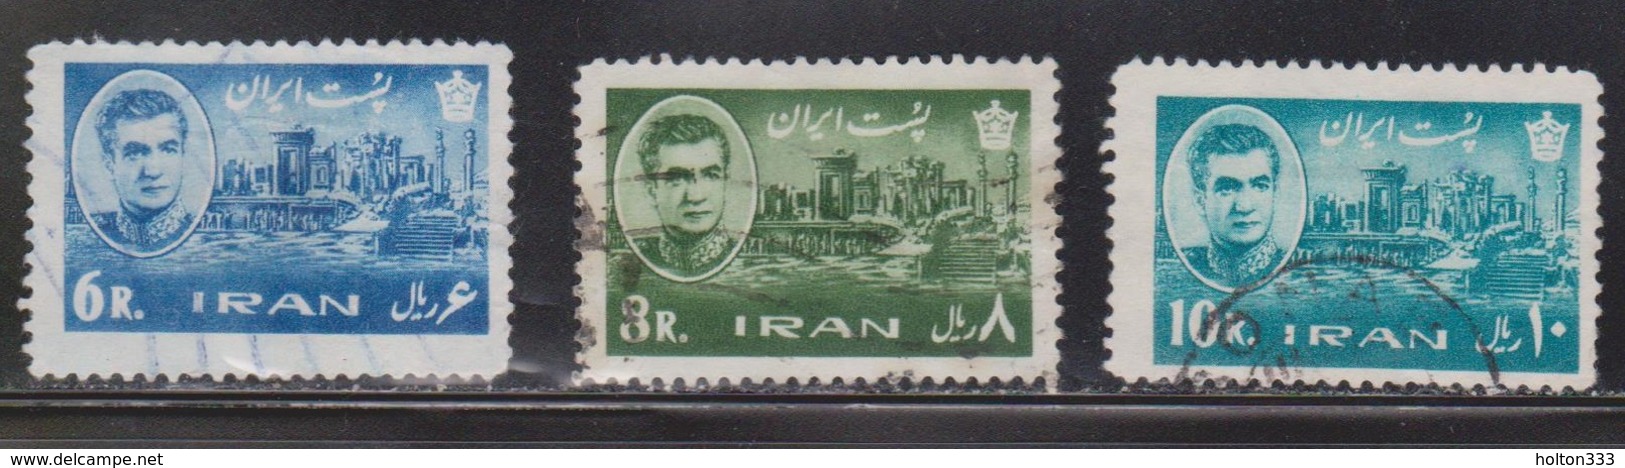 IRAN Scott # 1216-18 Used - Iran